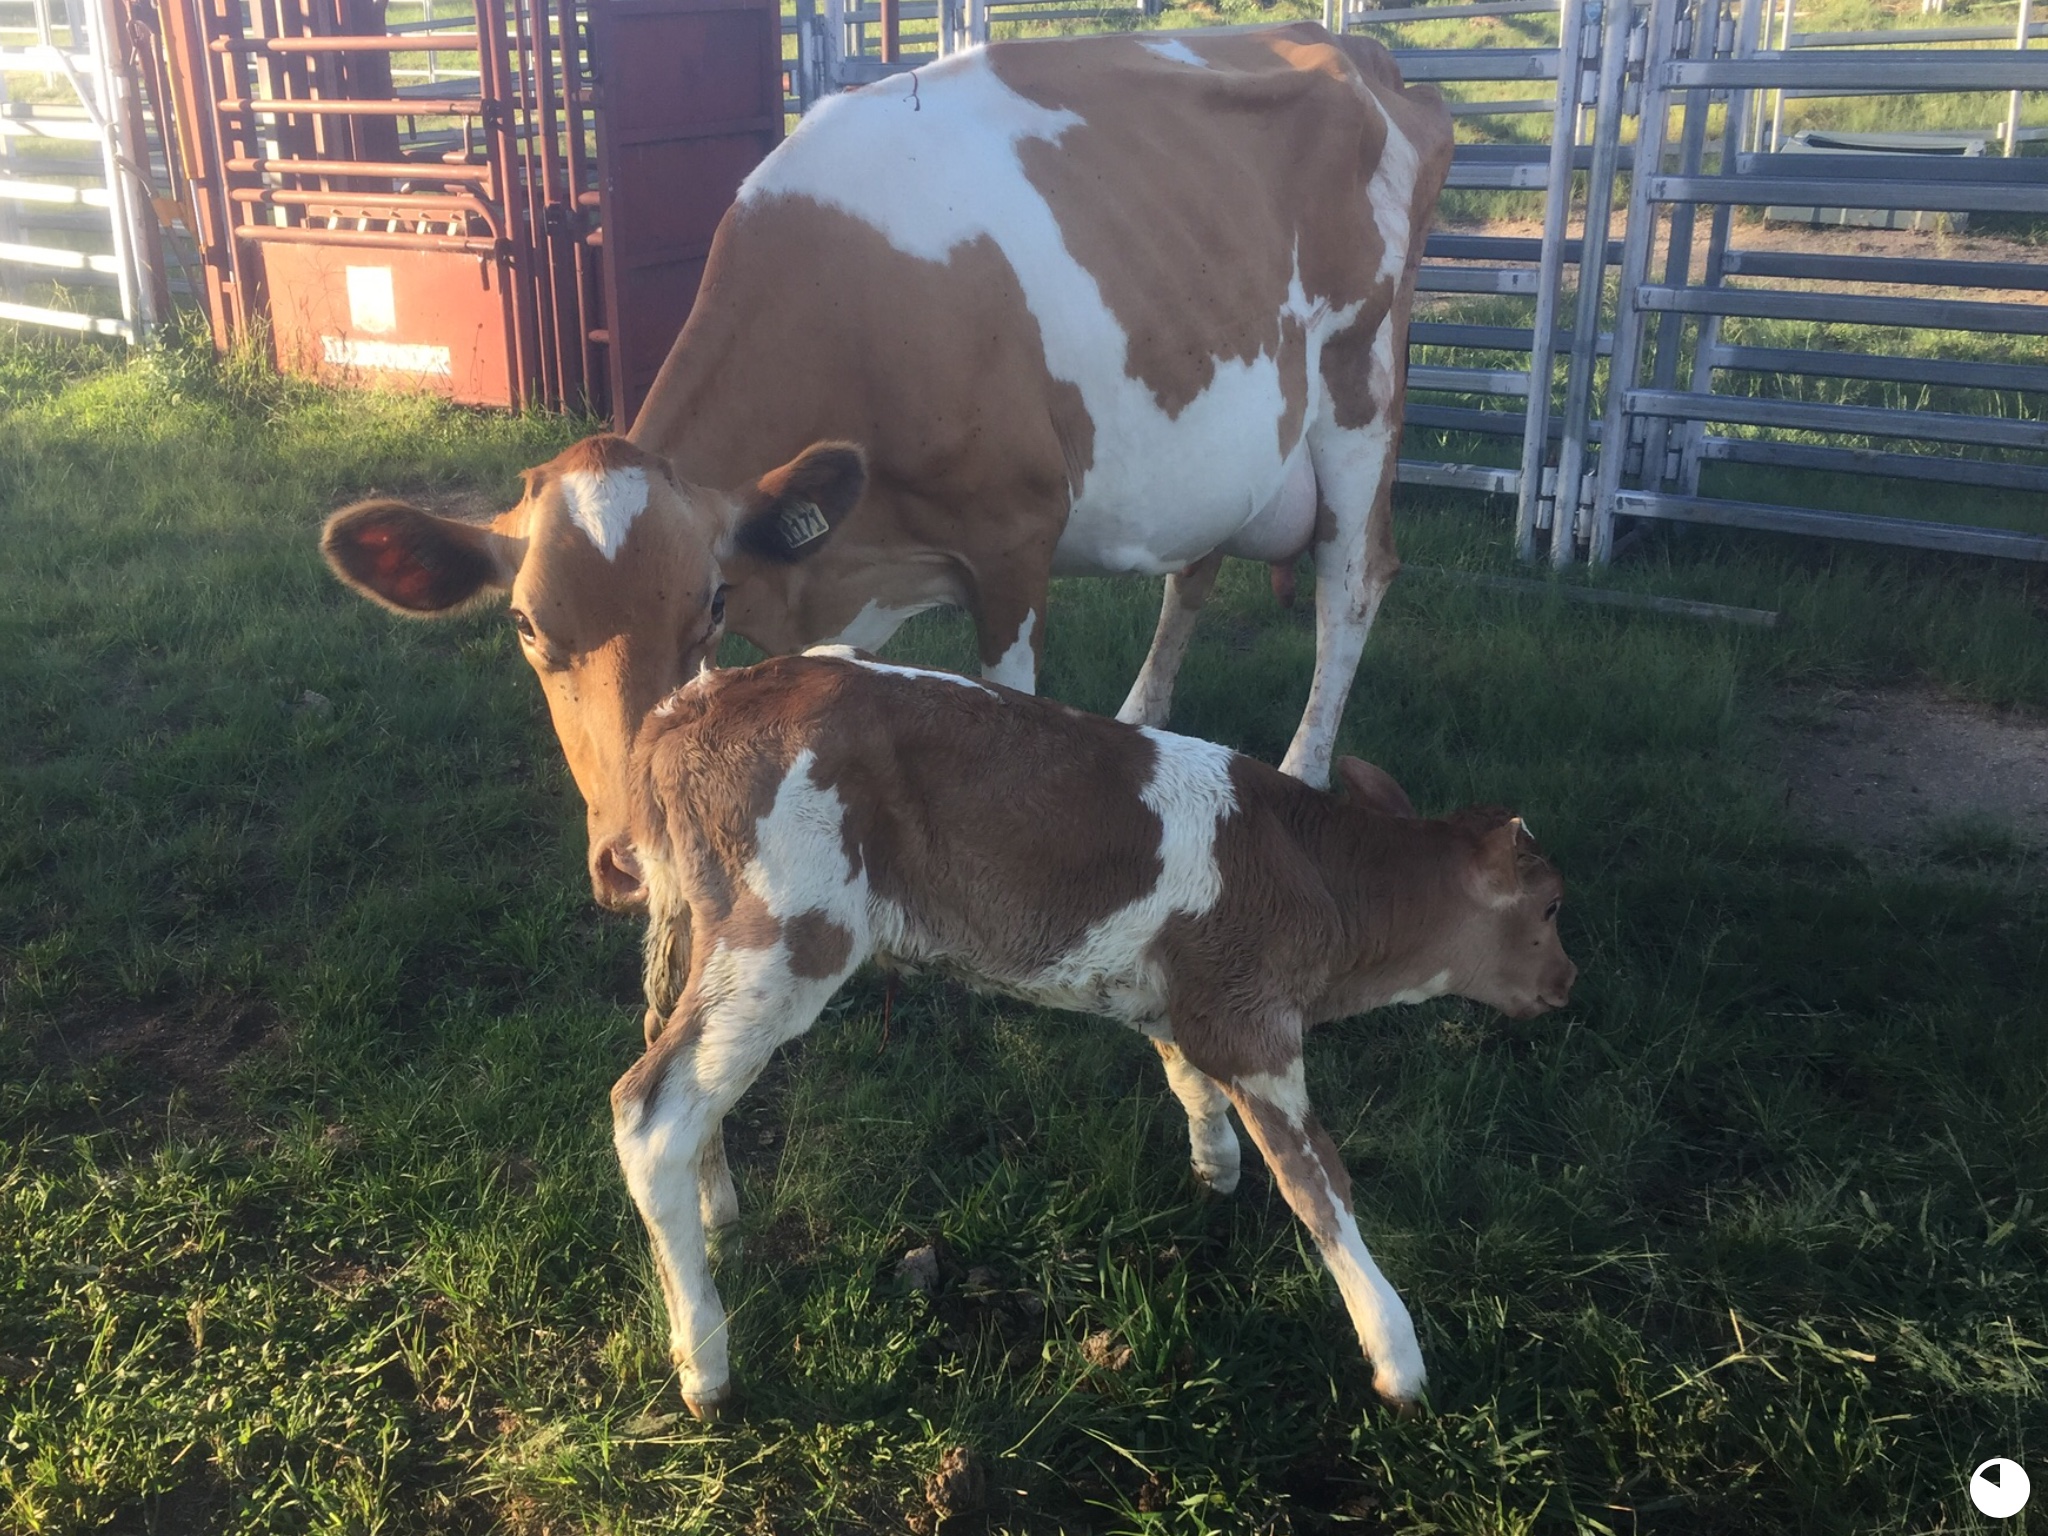 Penny's new calf